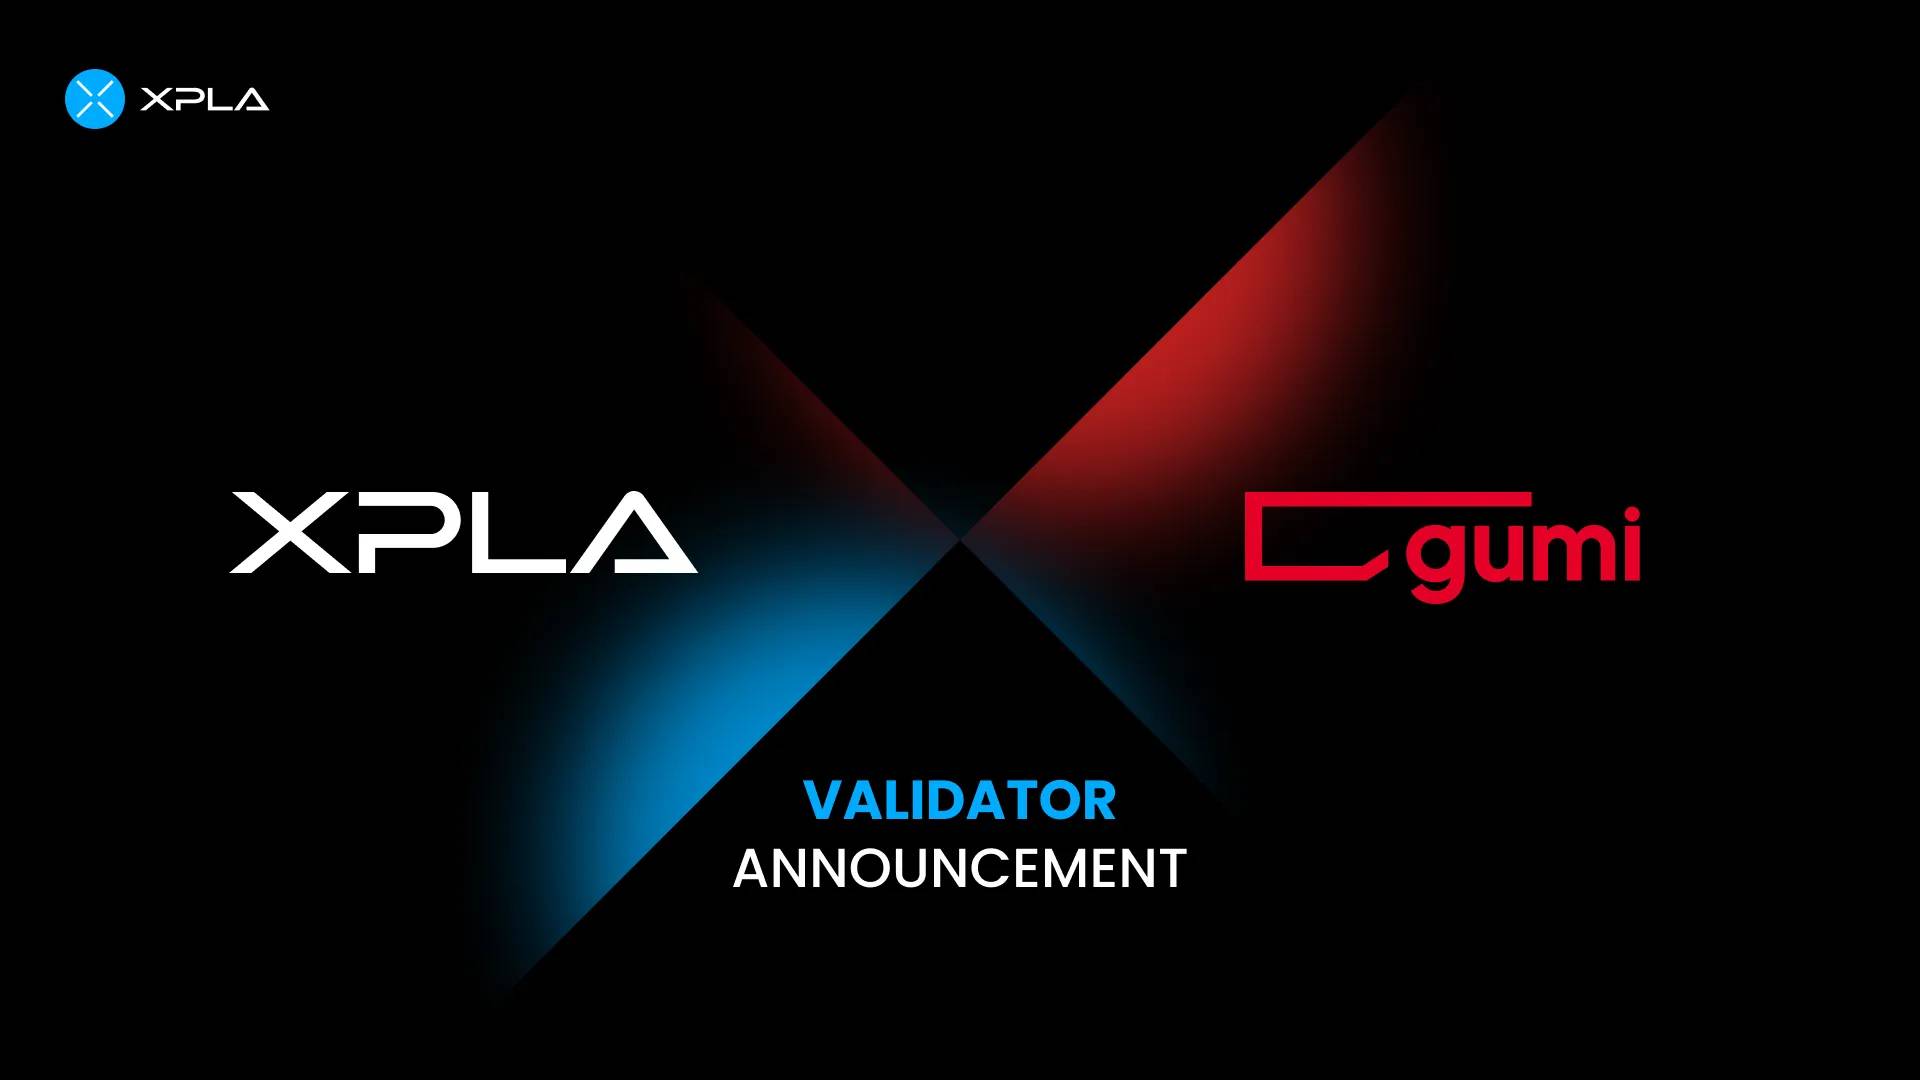 Gumi Inc: Japanischer Riese validiert XPLA-Blockchain und leistet damit Pionierarbeit für Web3-Sicherheit